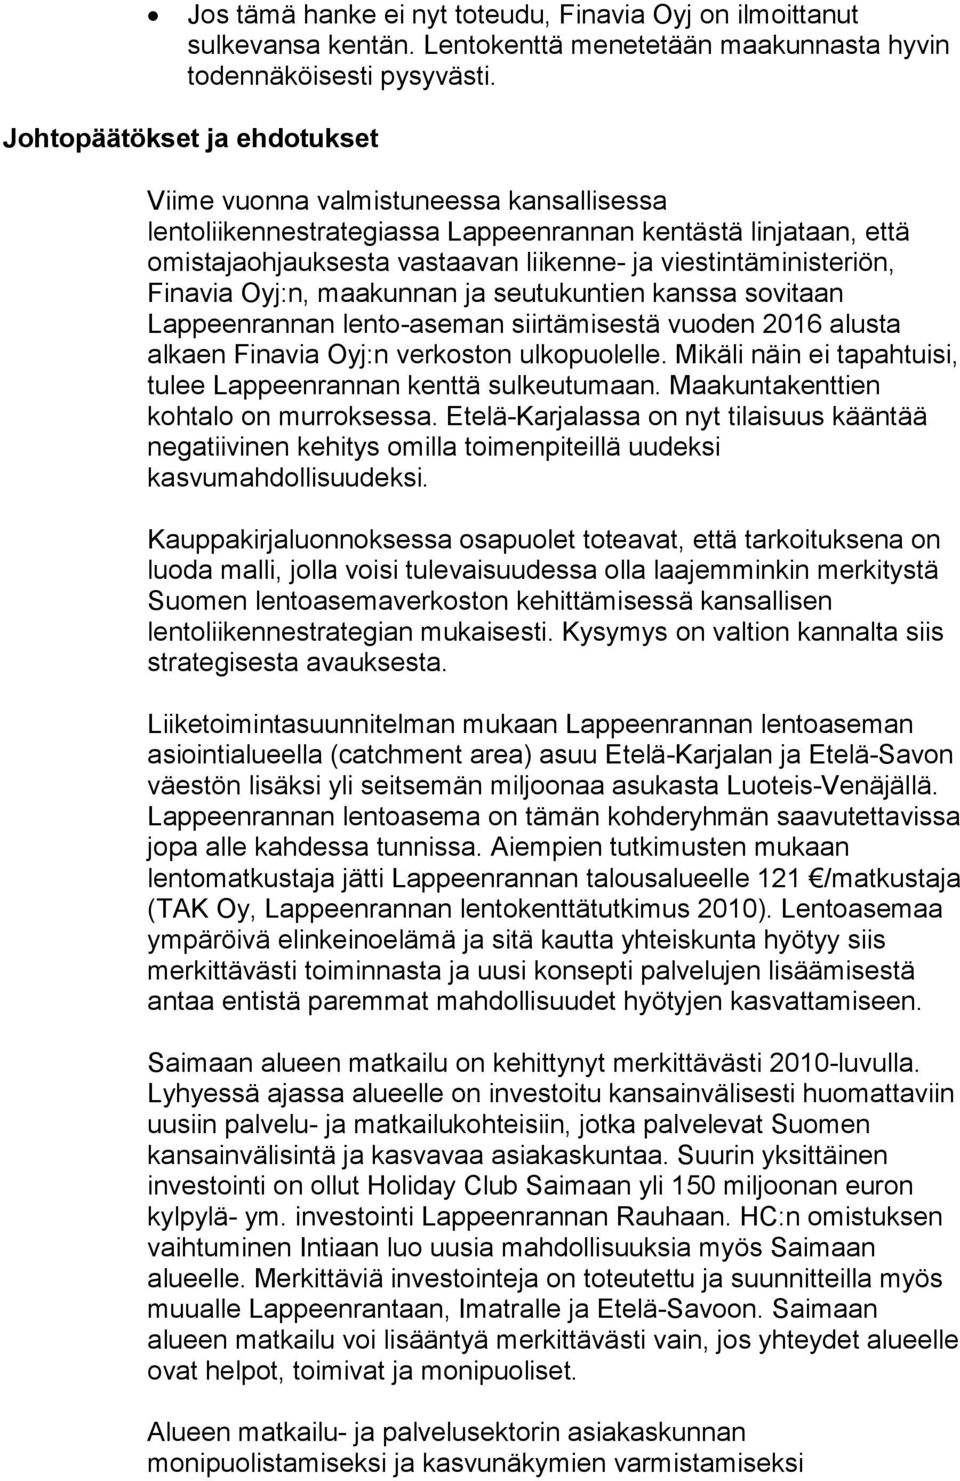 viestintäministeriön, Finavia Oyj:n, maakunnan ja seutukuntien kanssa sovitaan Lappeenrannan lento-aseman siirtämisestä vuoden 2016 alusta alkaen Finavia Oyj:n verkoston ulkopuolelle.